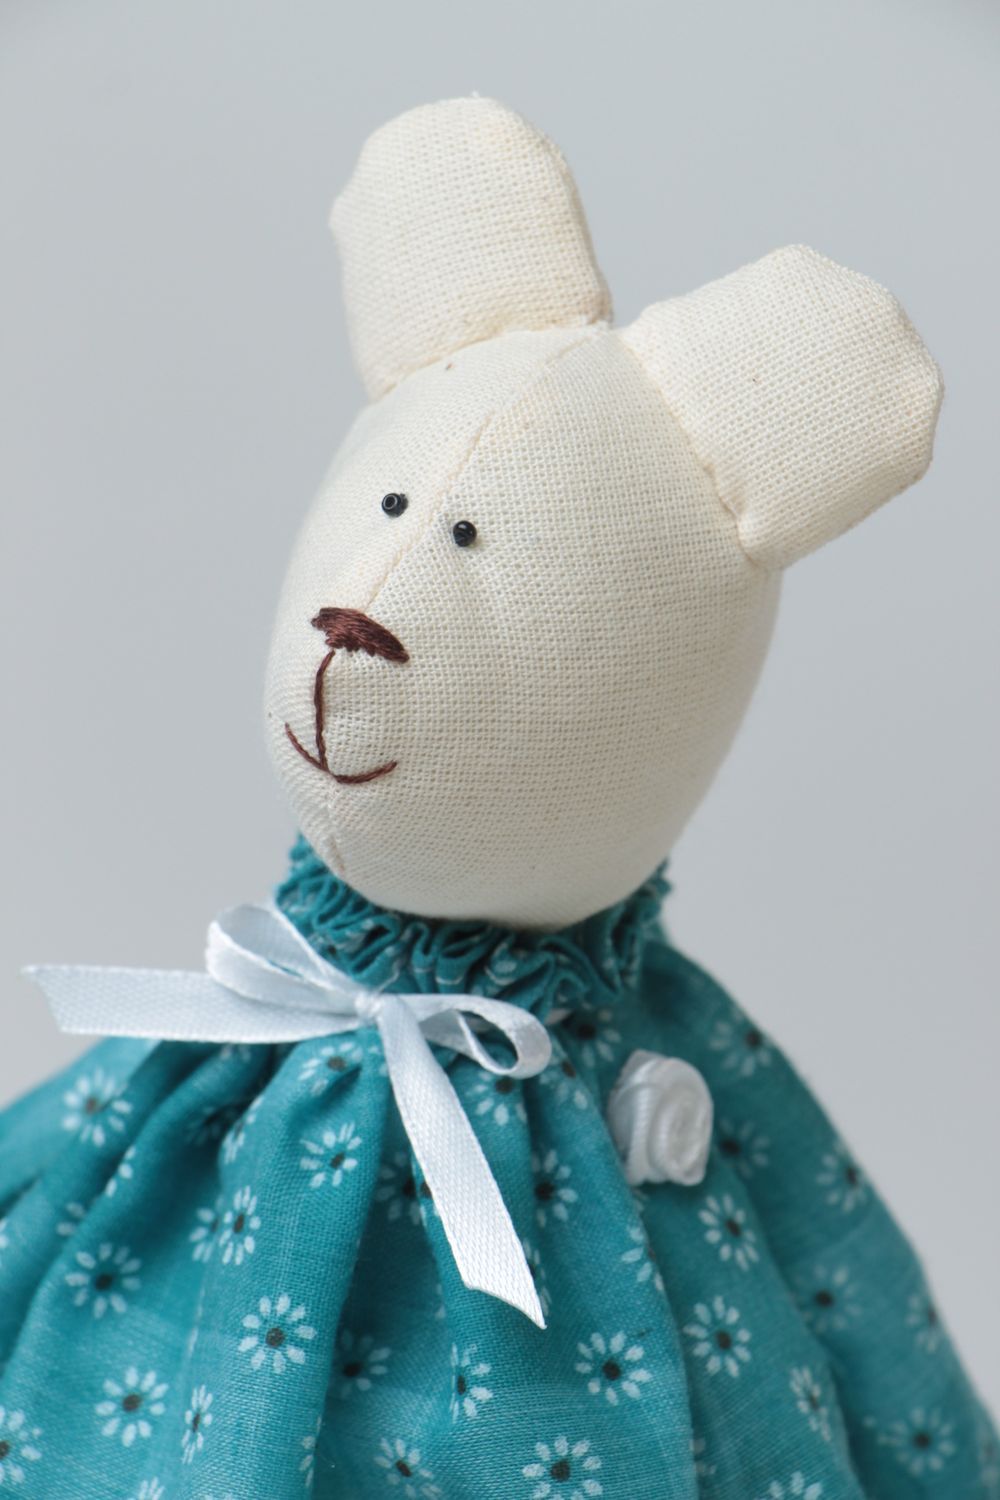 Joli jouet mou fait main ourse blanche en robe de cotonnette et coton cadeau photo 3